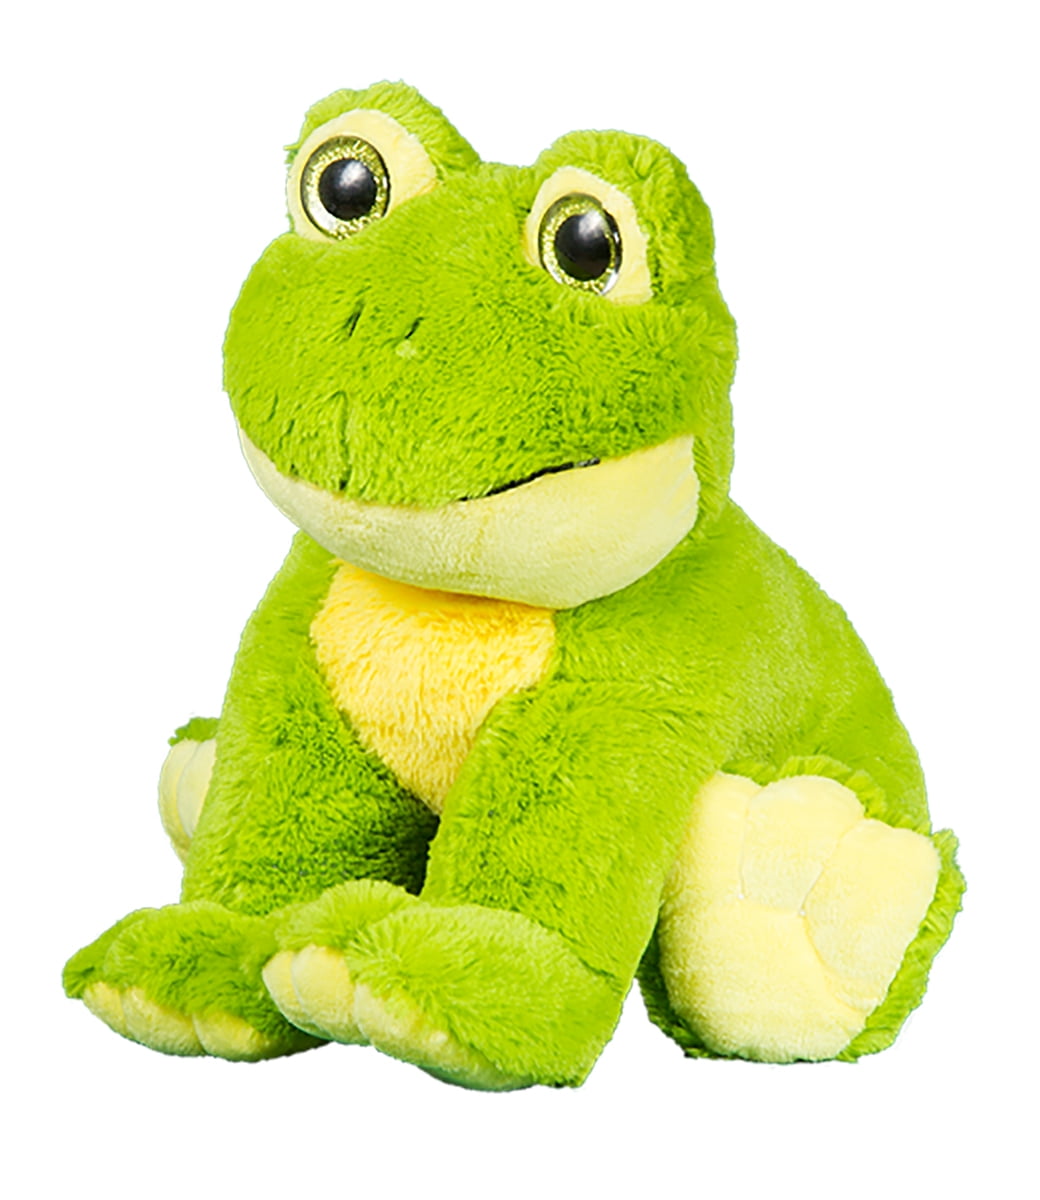 Cuddly Soft 16 inch Stuffed Frog - We stuff 'emyou love 'em! 